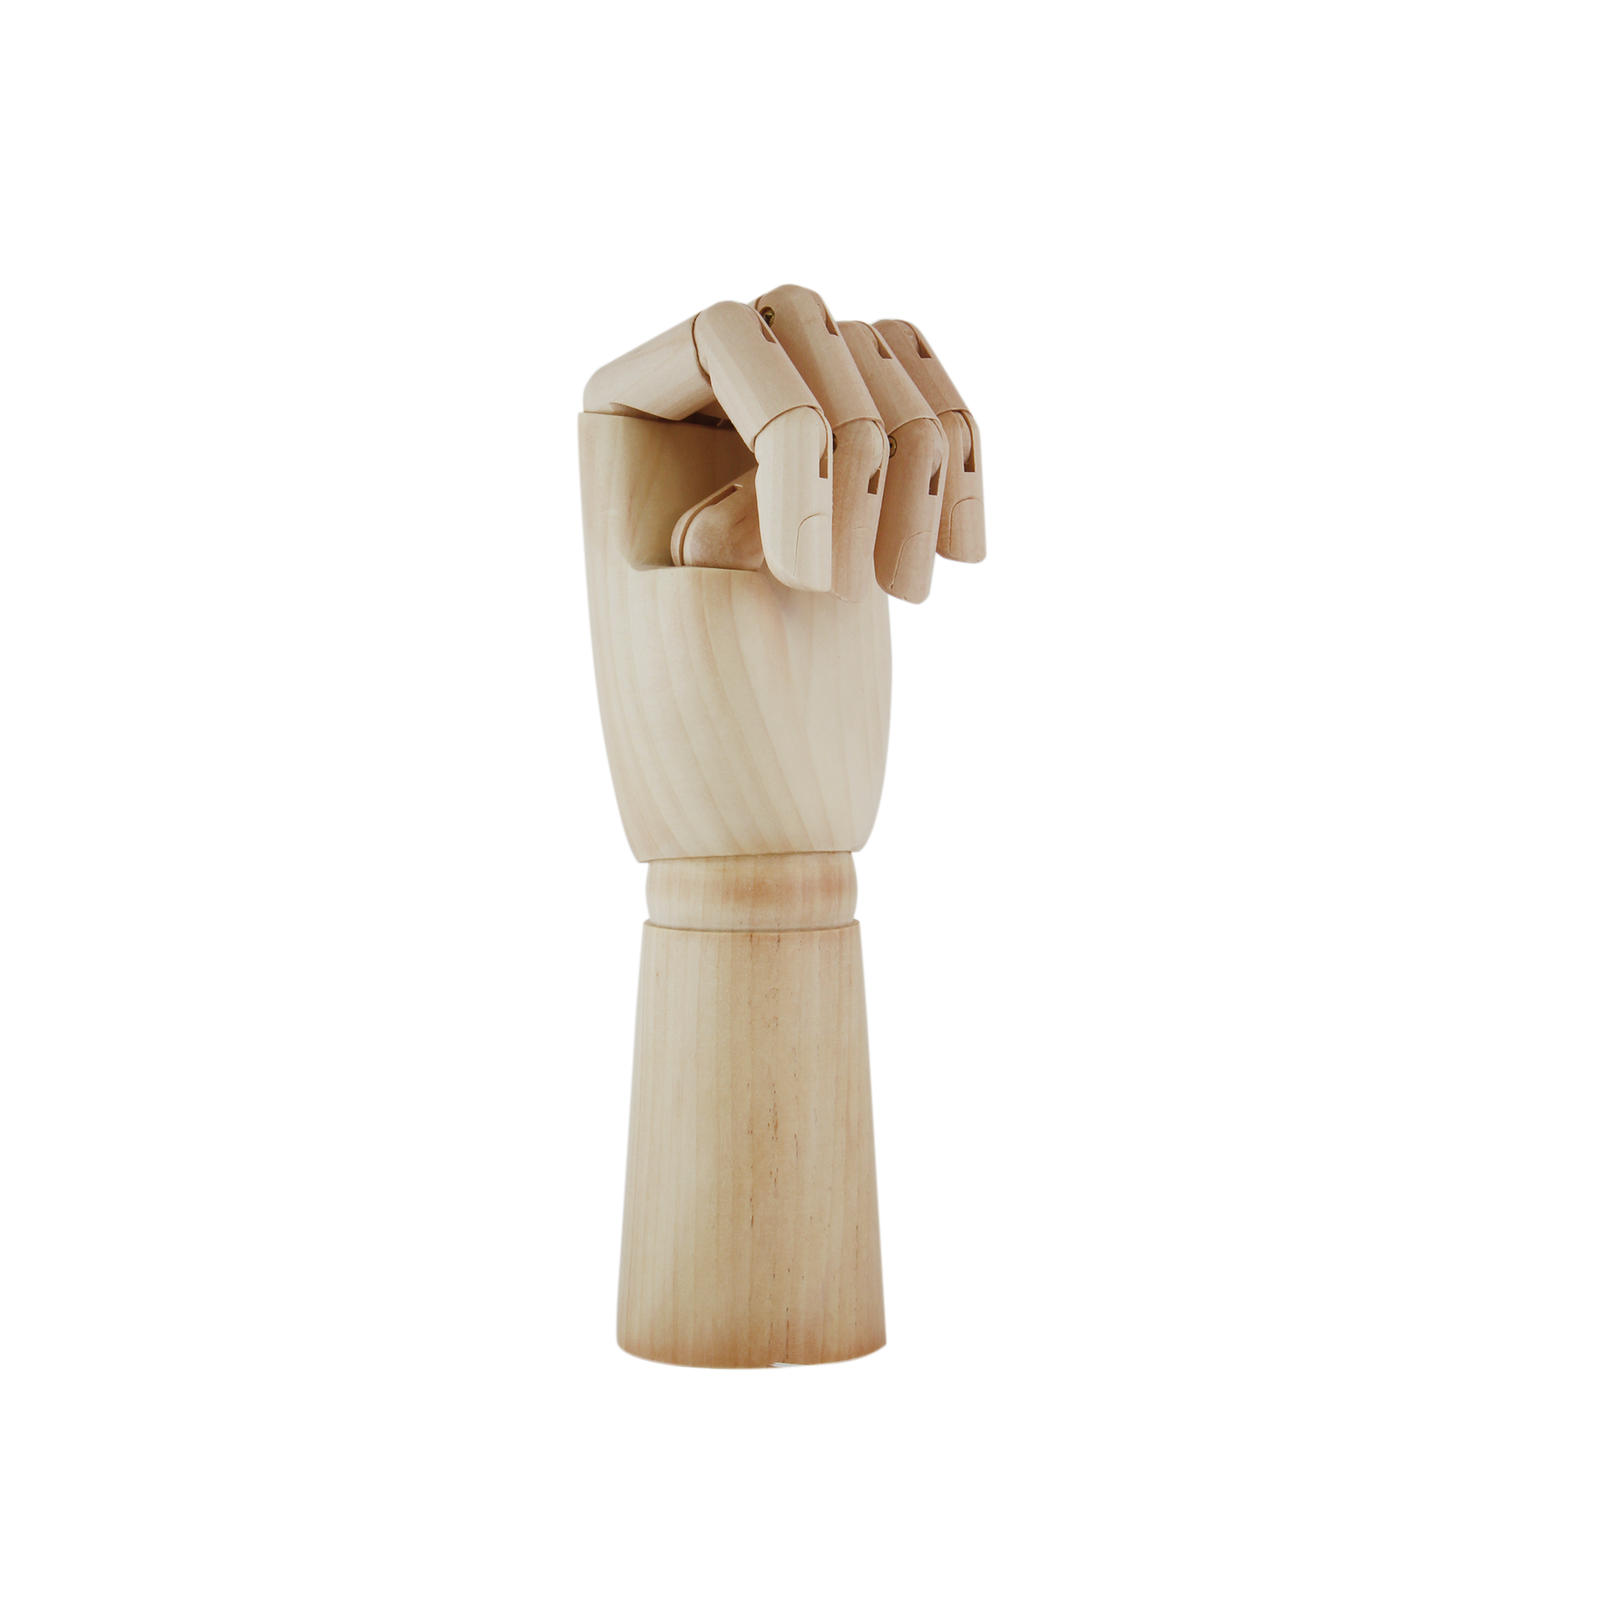 ATL - Maniquí mano masculina articulada